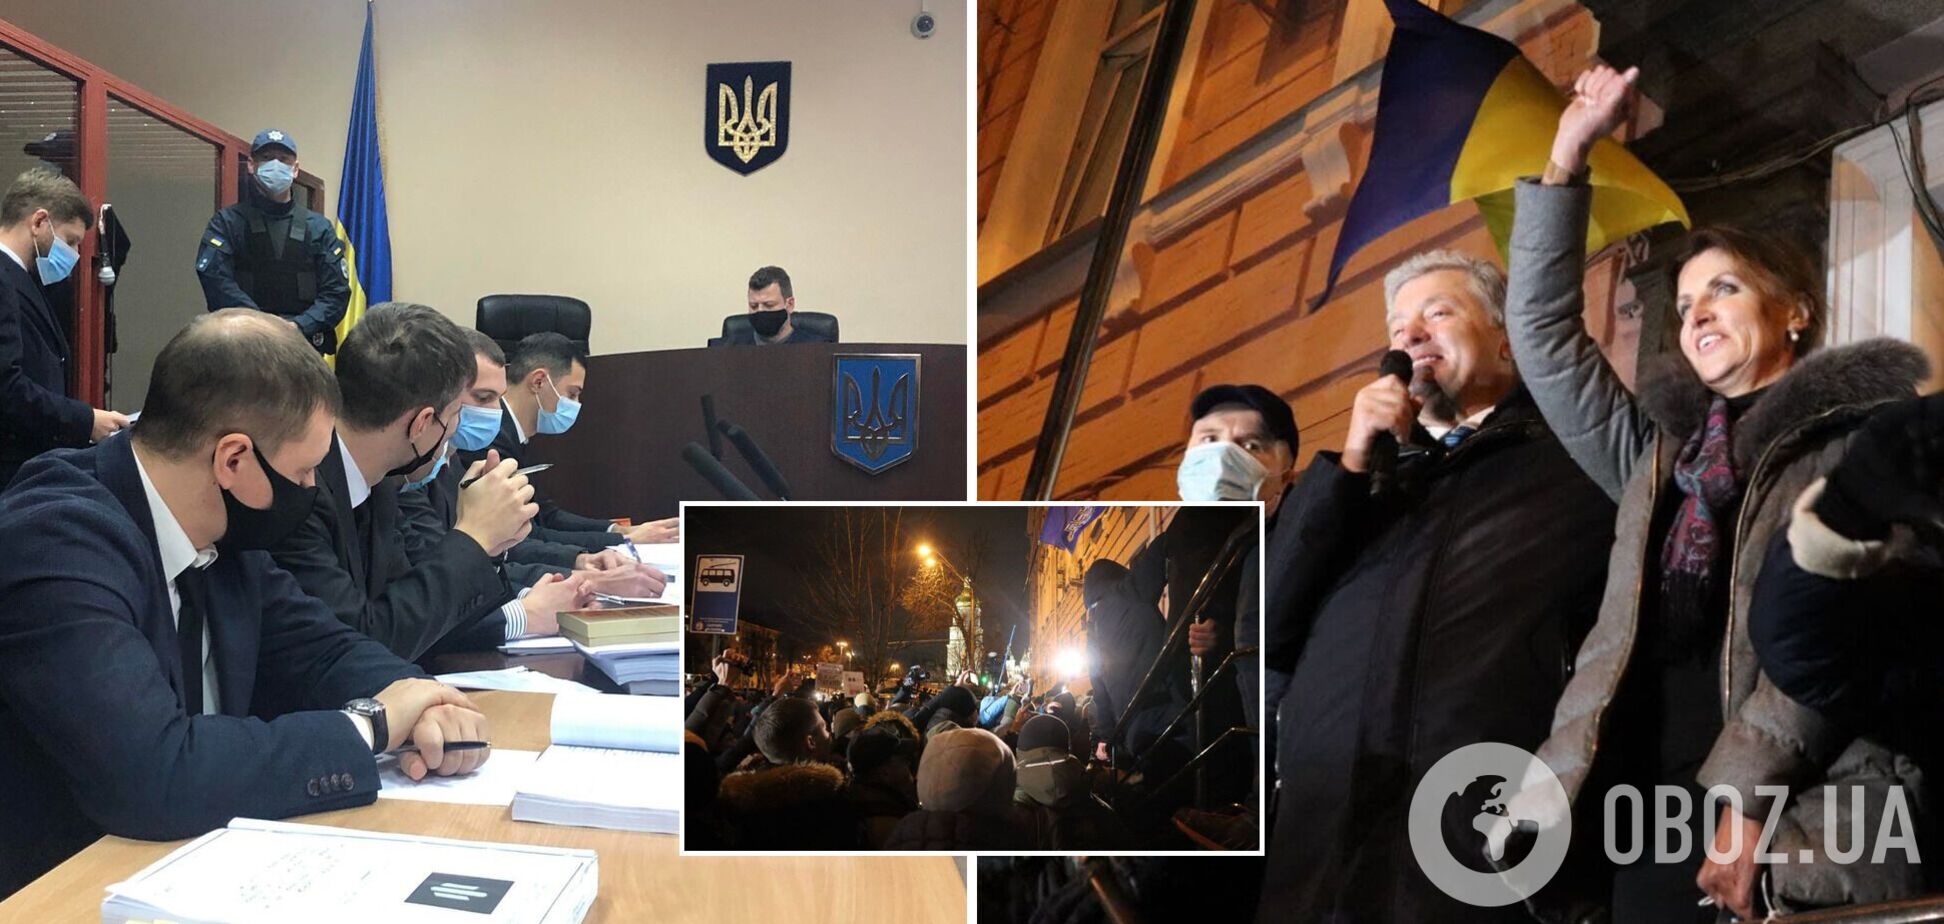 Порошенко вернулся в Украину, суд за 11 часов так и не избрал ему меру пресечения. Фото, видео и все подробности